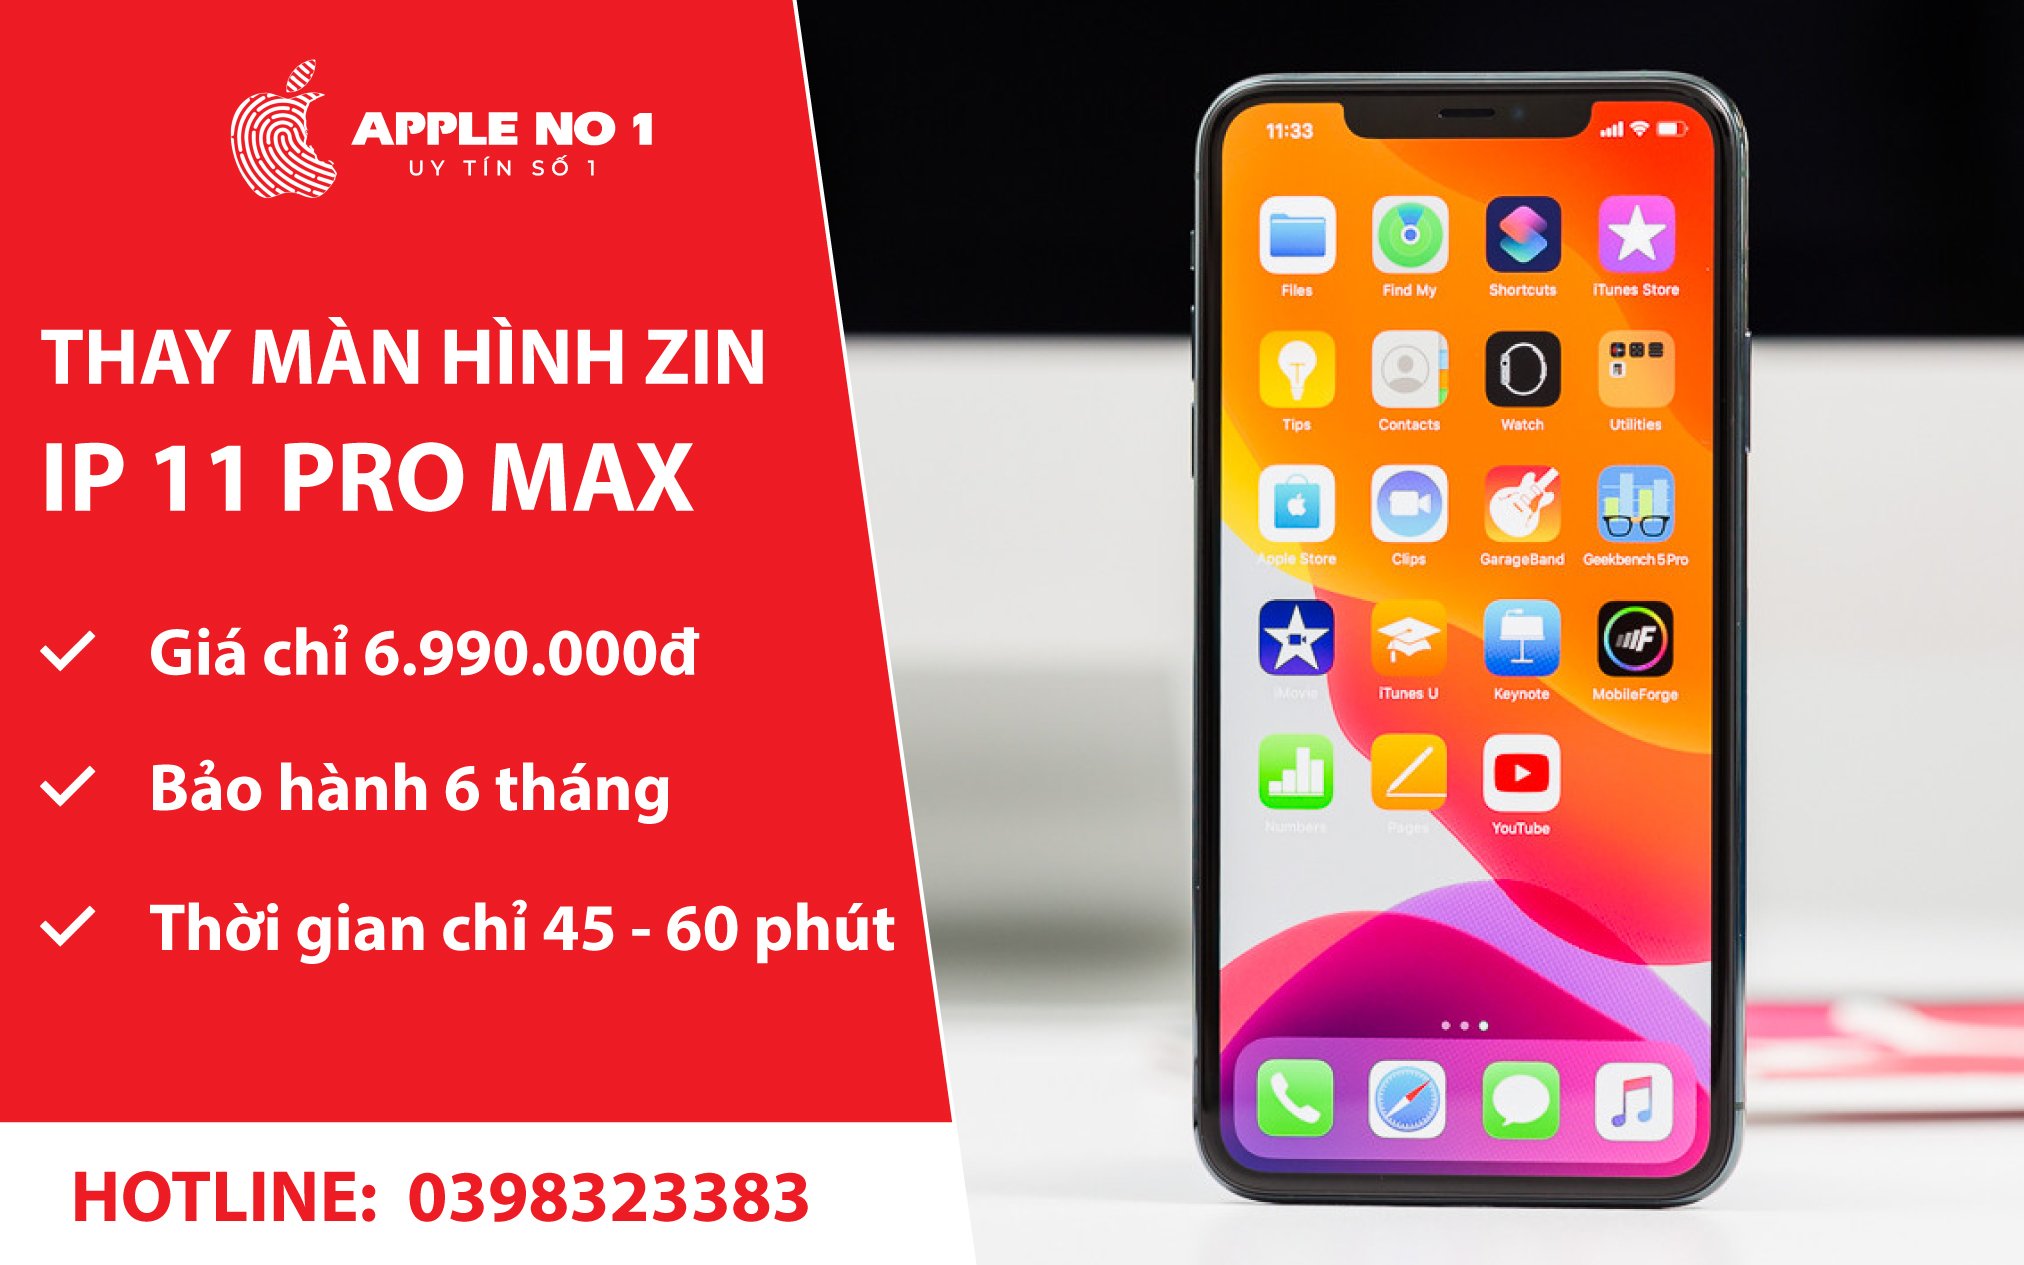 thay man hinh iphone 11 pro max bi roi vo chinh hang tai Apple No.1